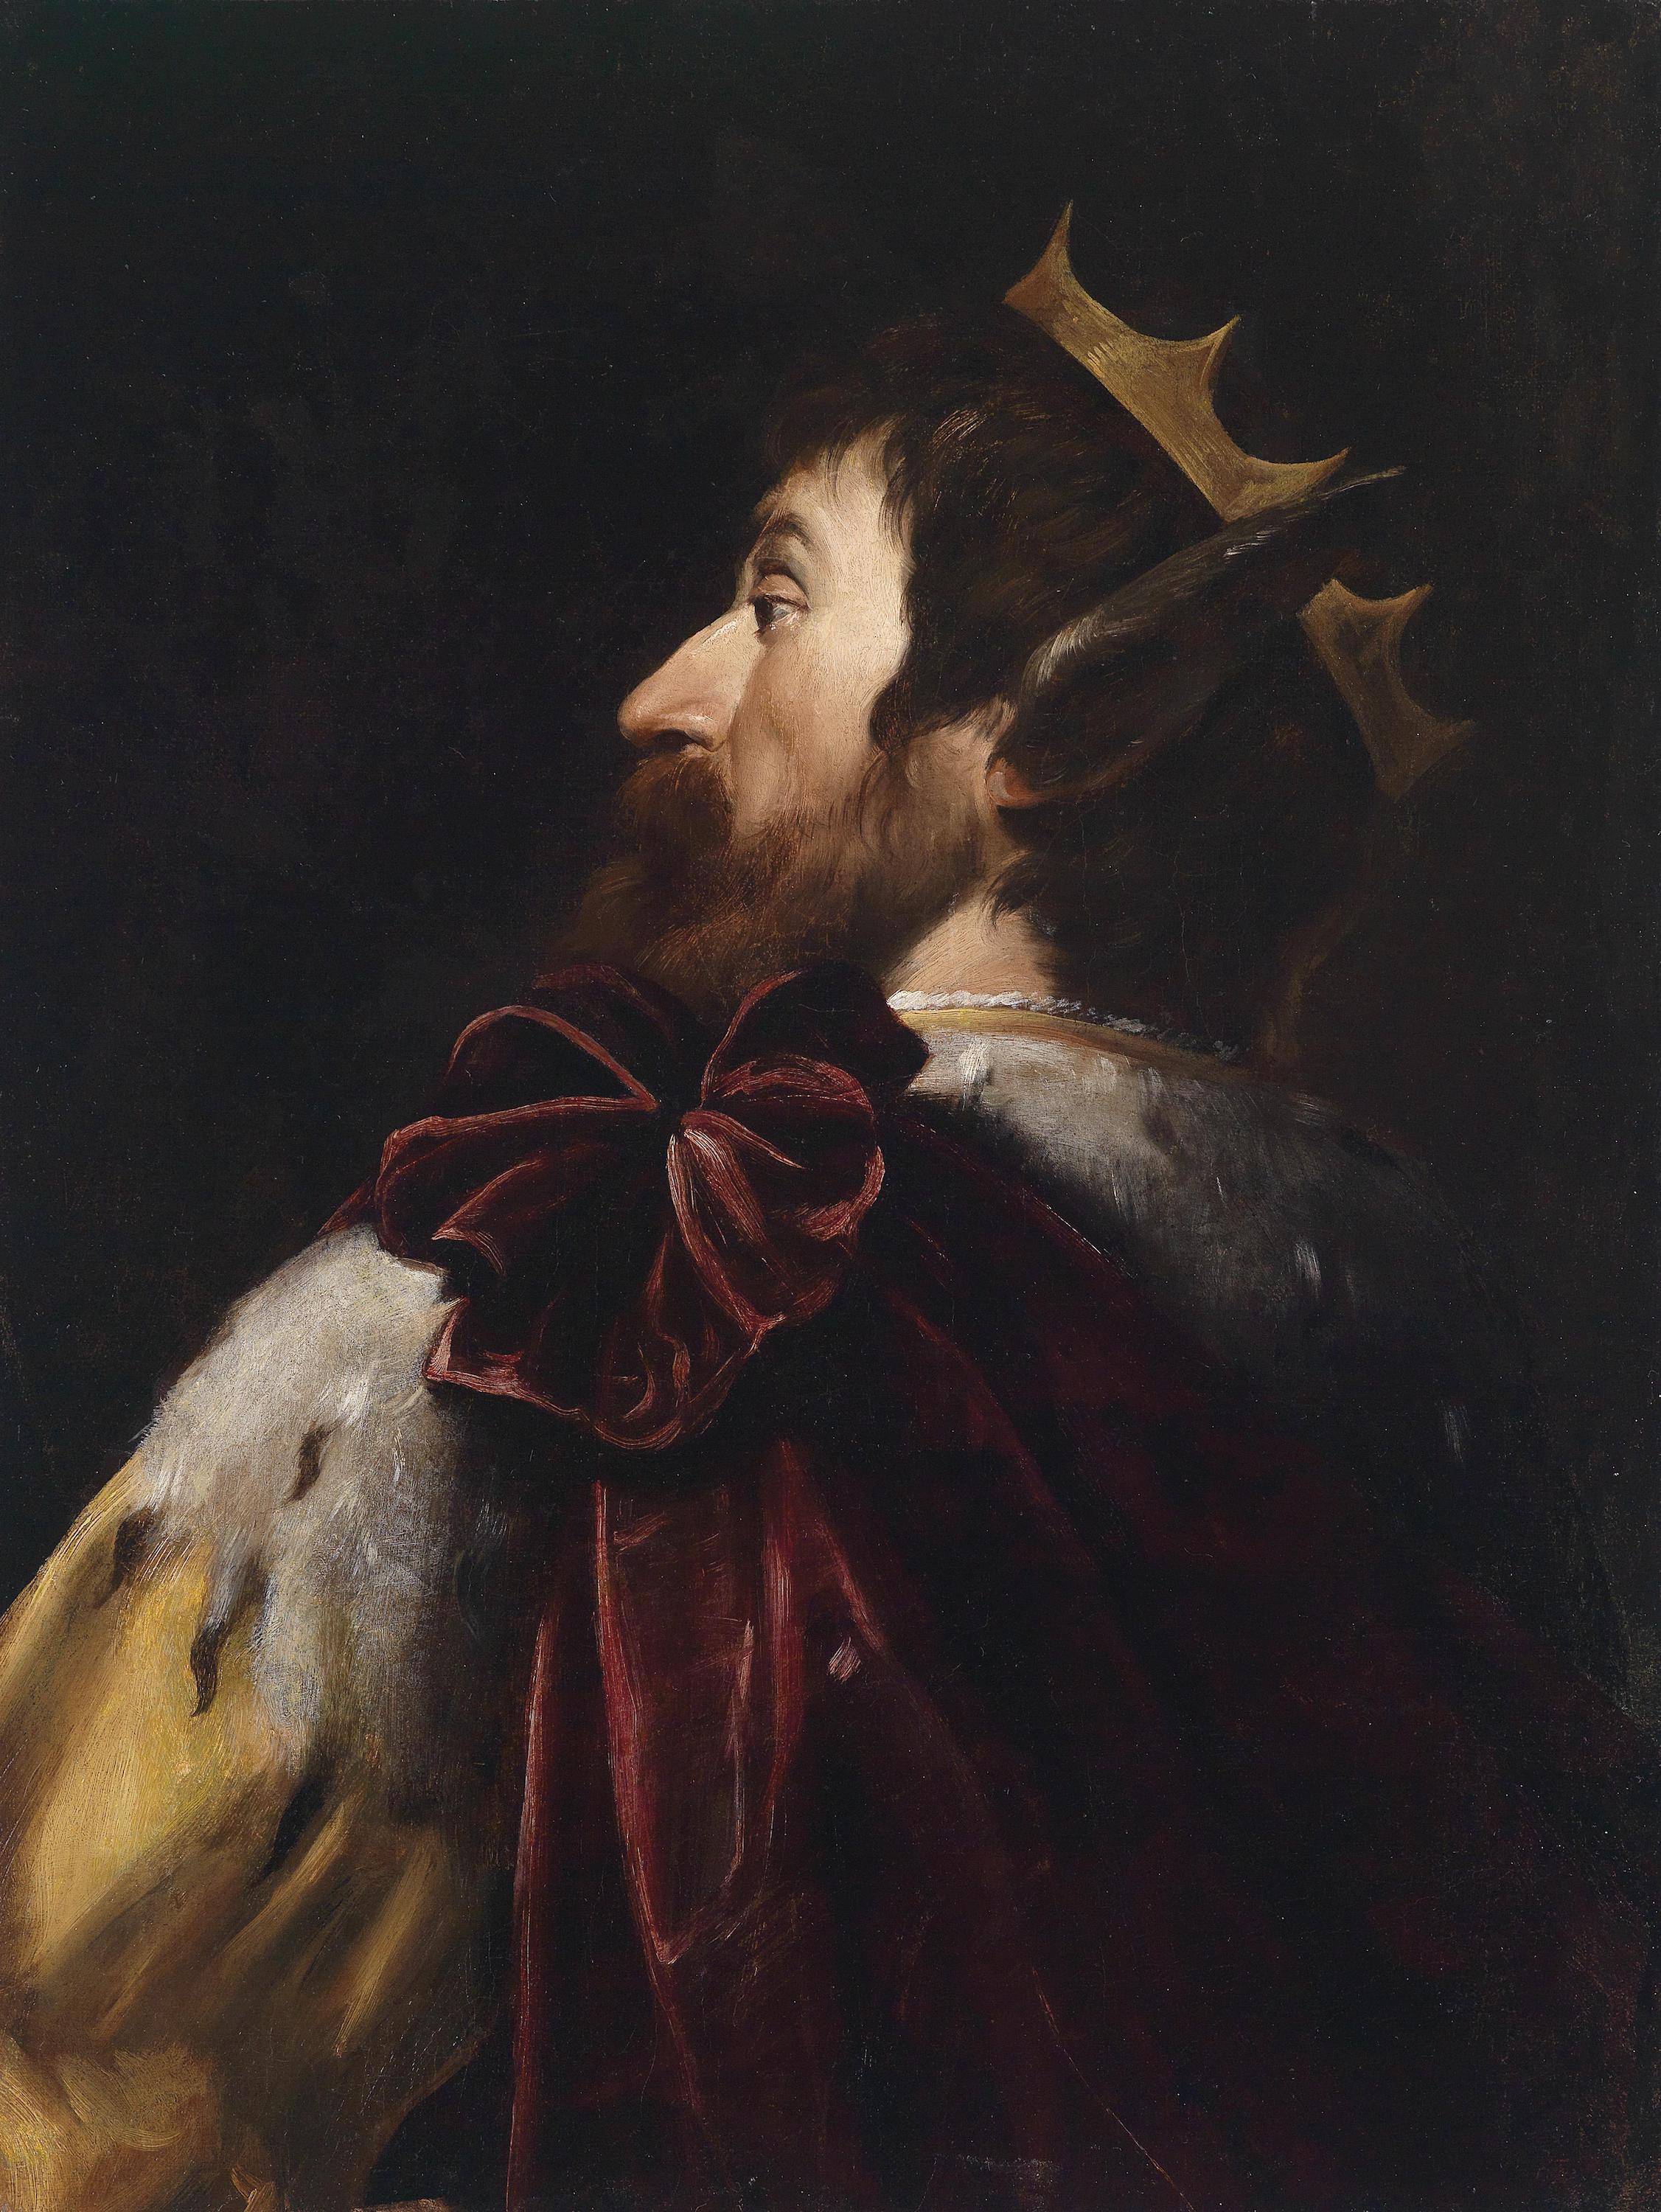 Kral Midas by Andrea Vaccaro - c. 1620-70 özel koleksiyon